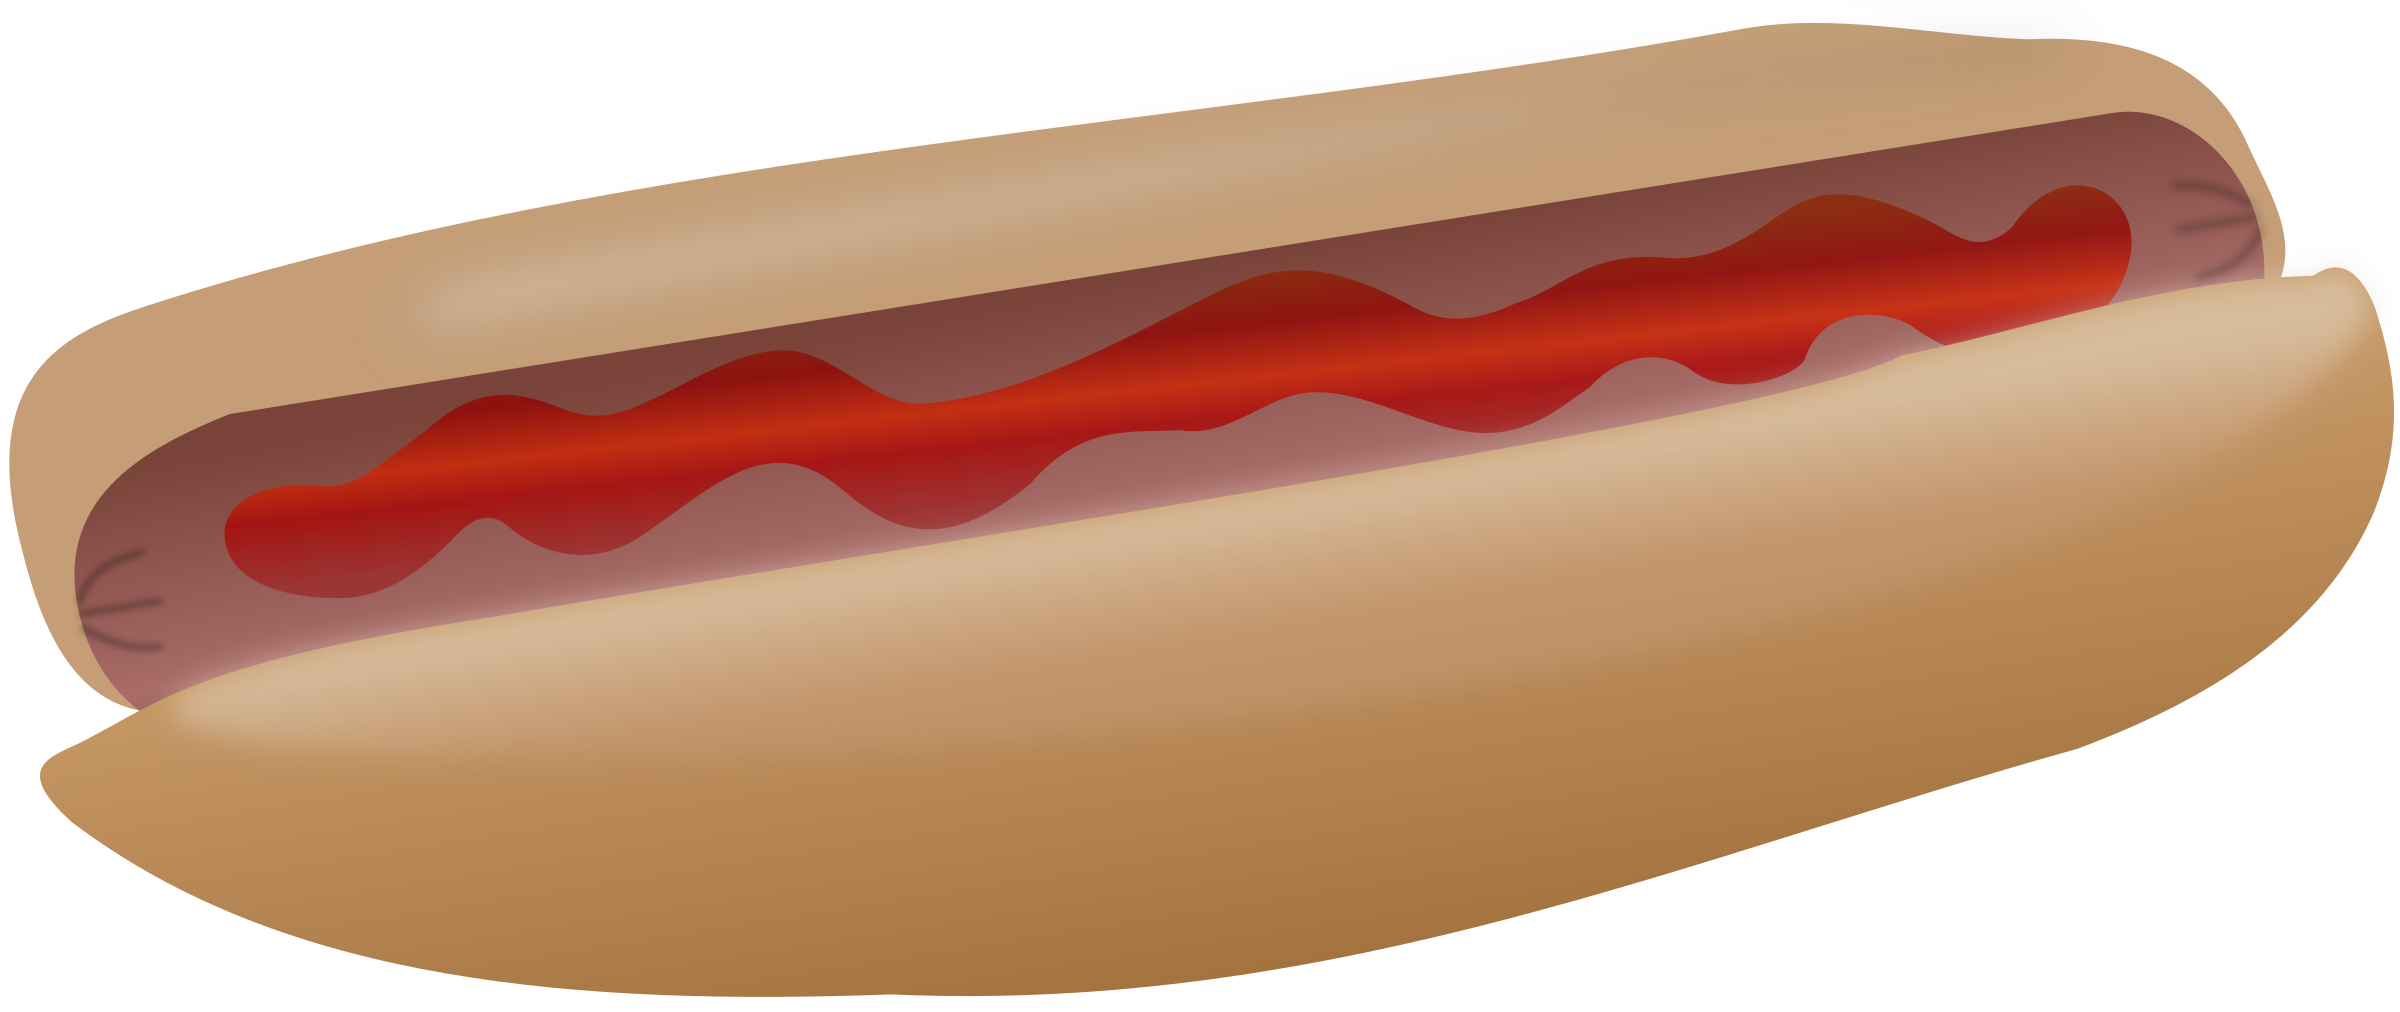 Hot dog with big. Hotdog clipart ketchup